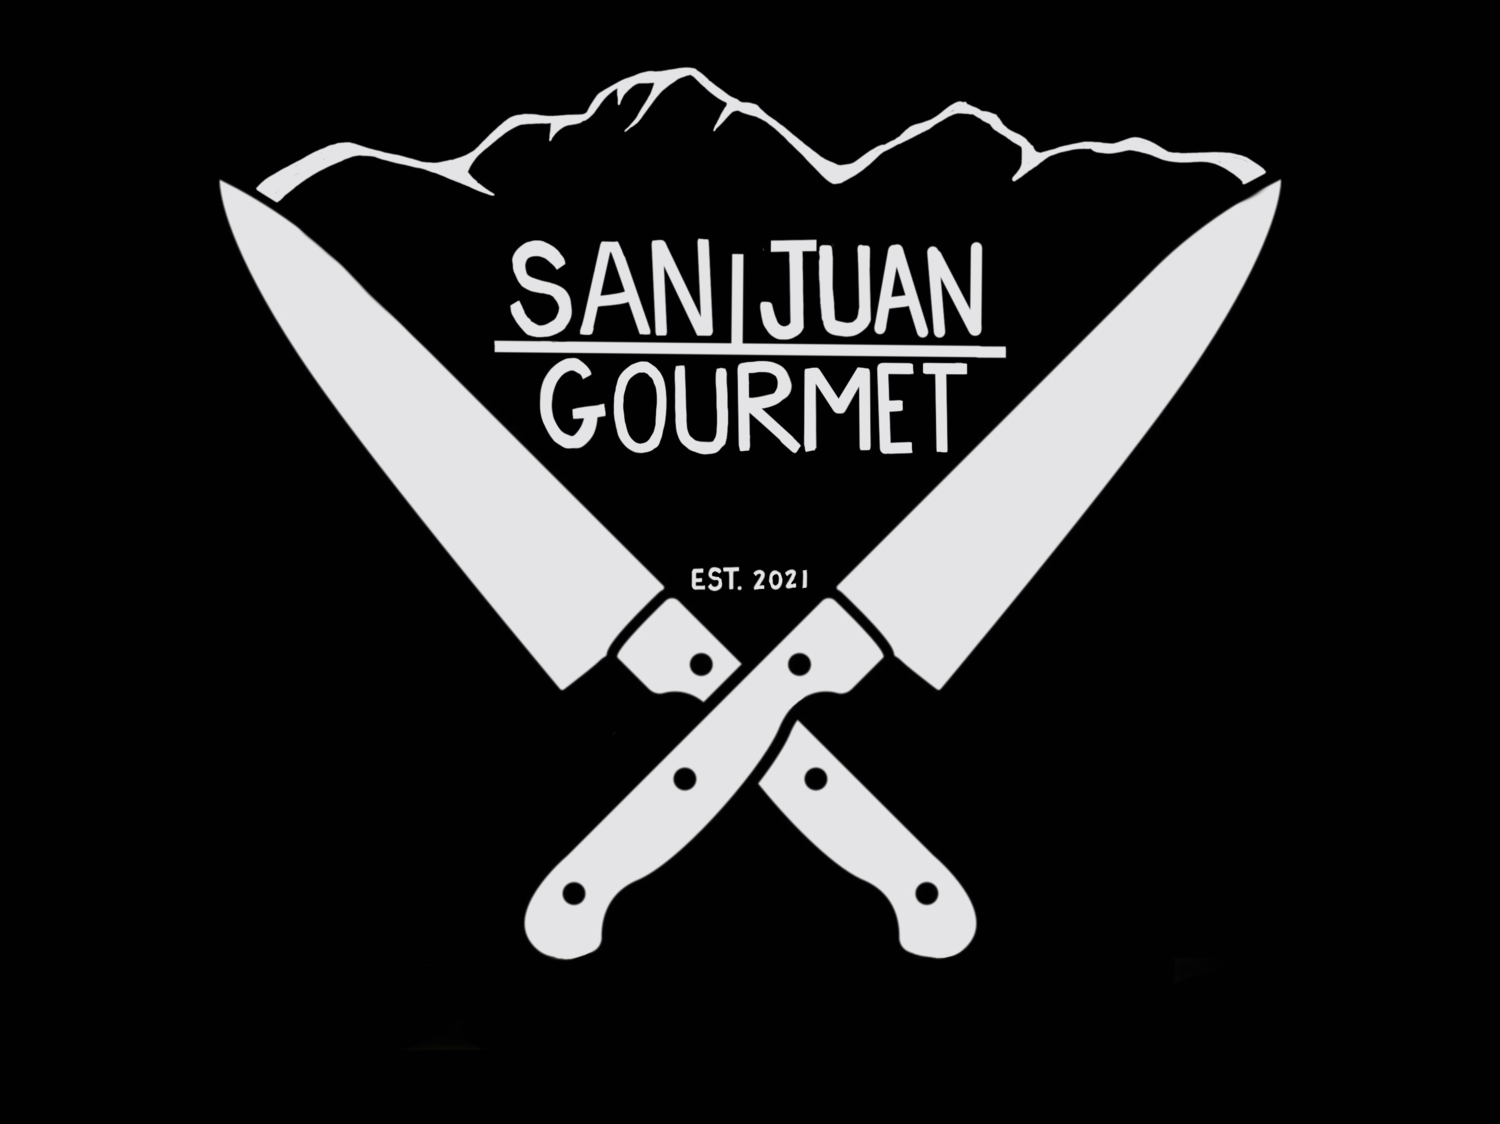 San Juan Gourmet